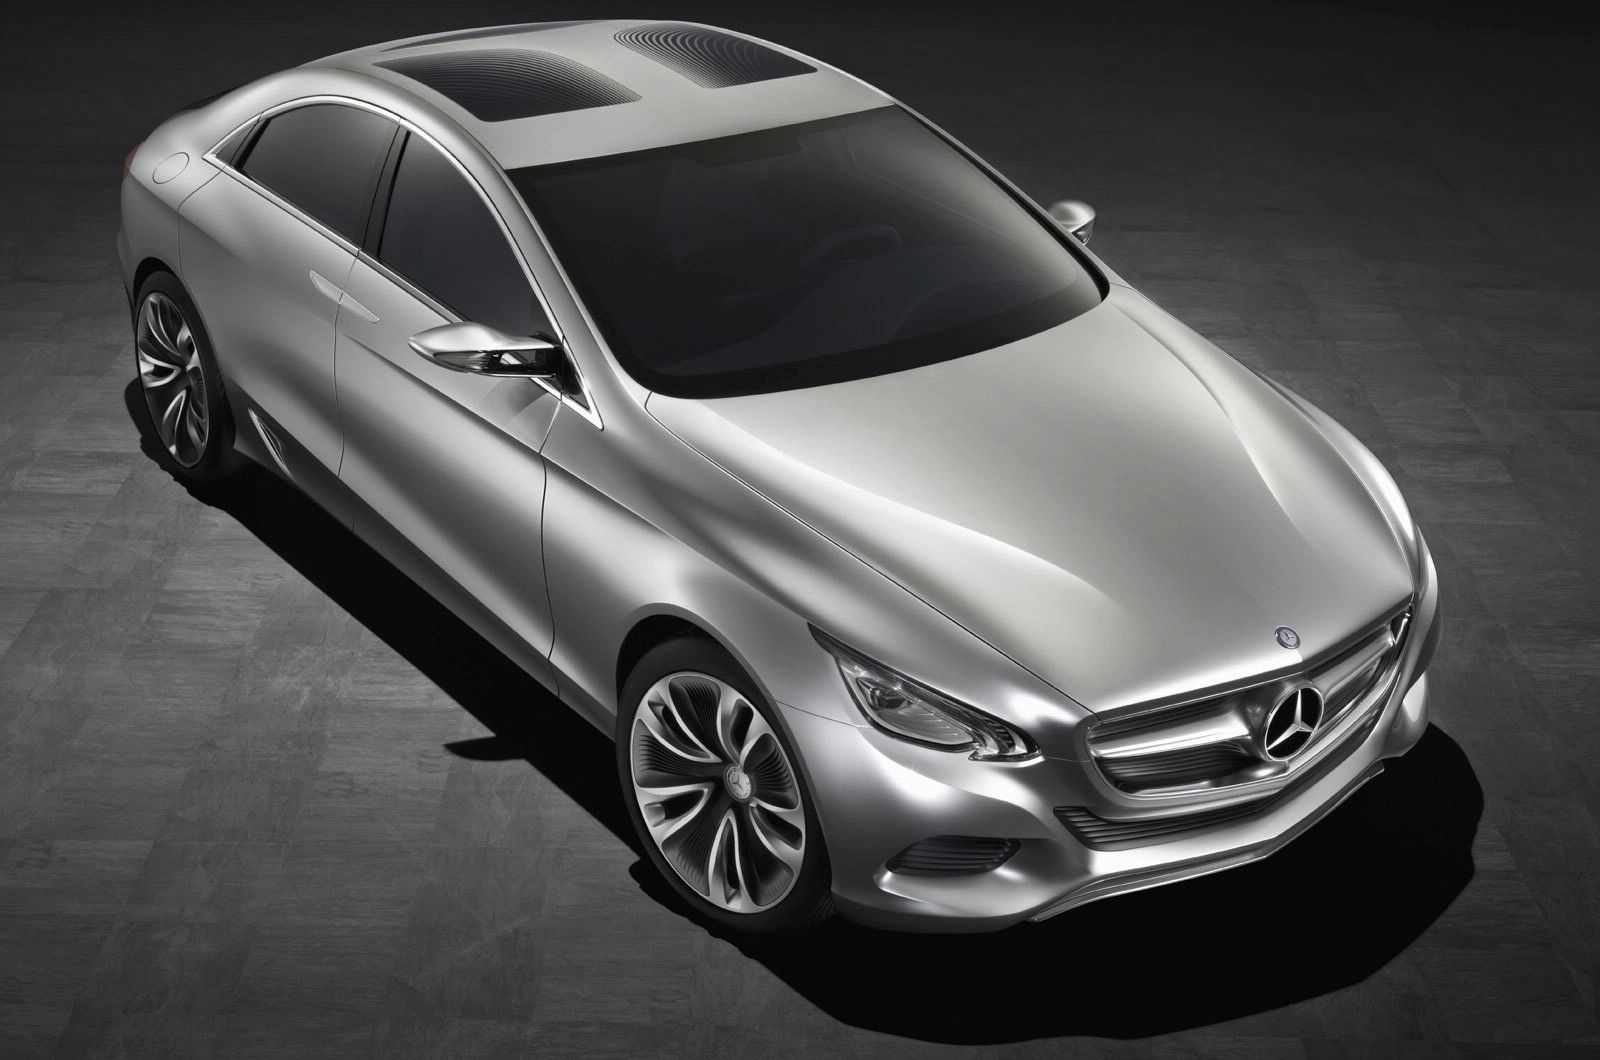 Mercedes BLS Concept